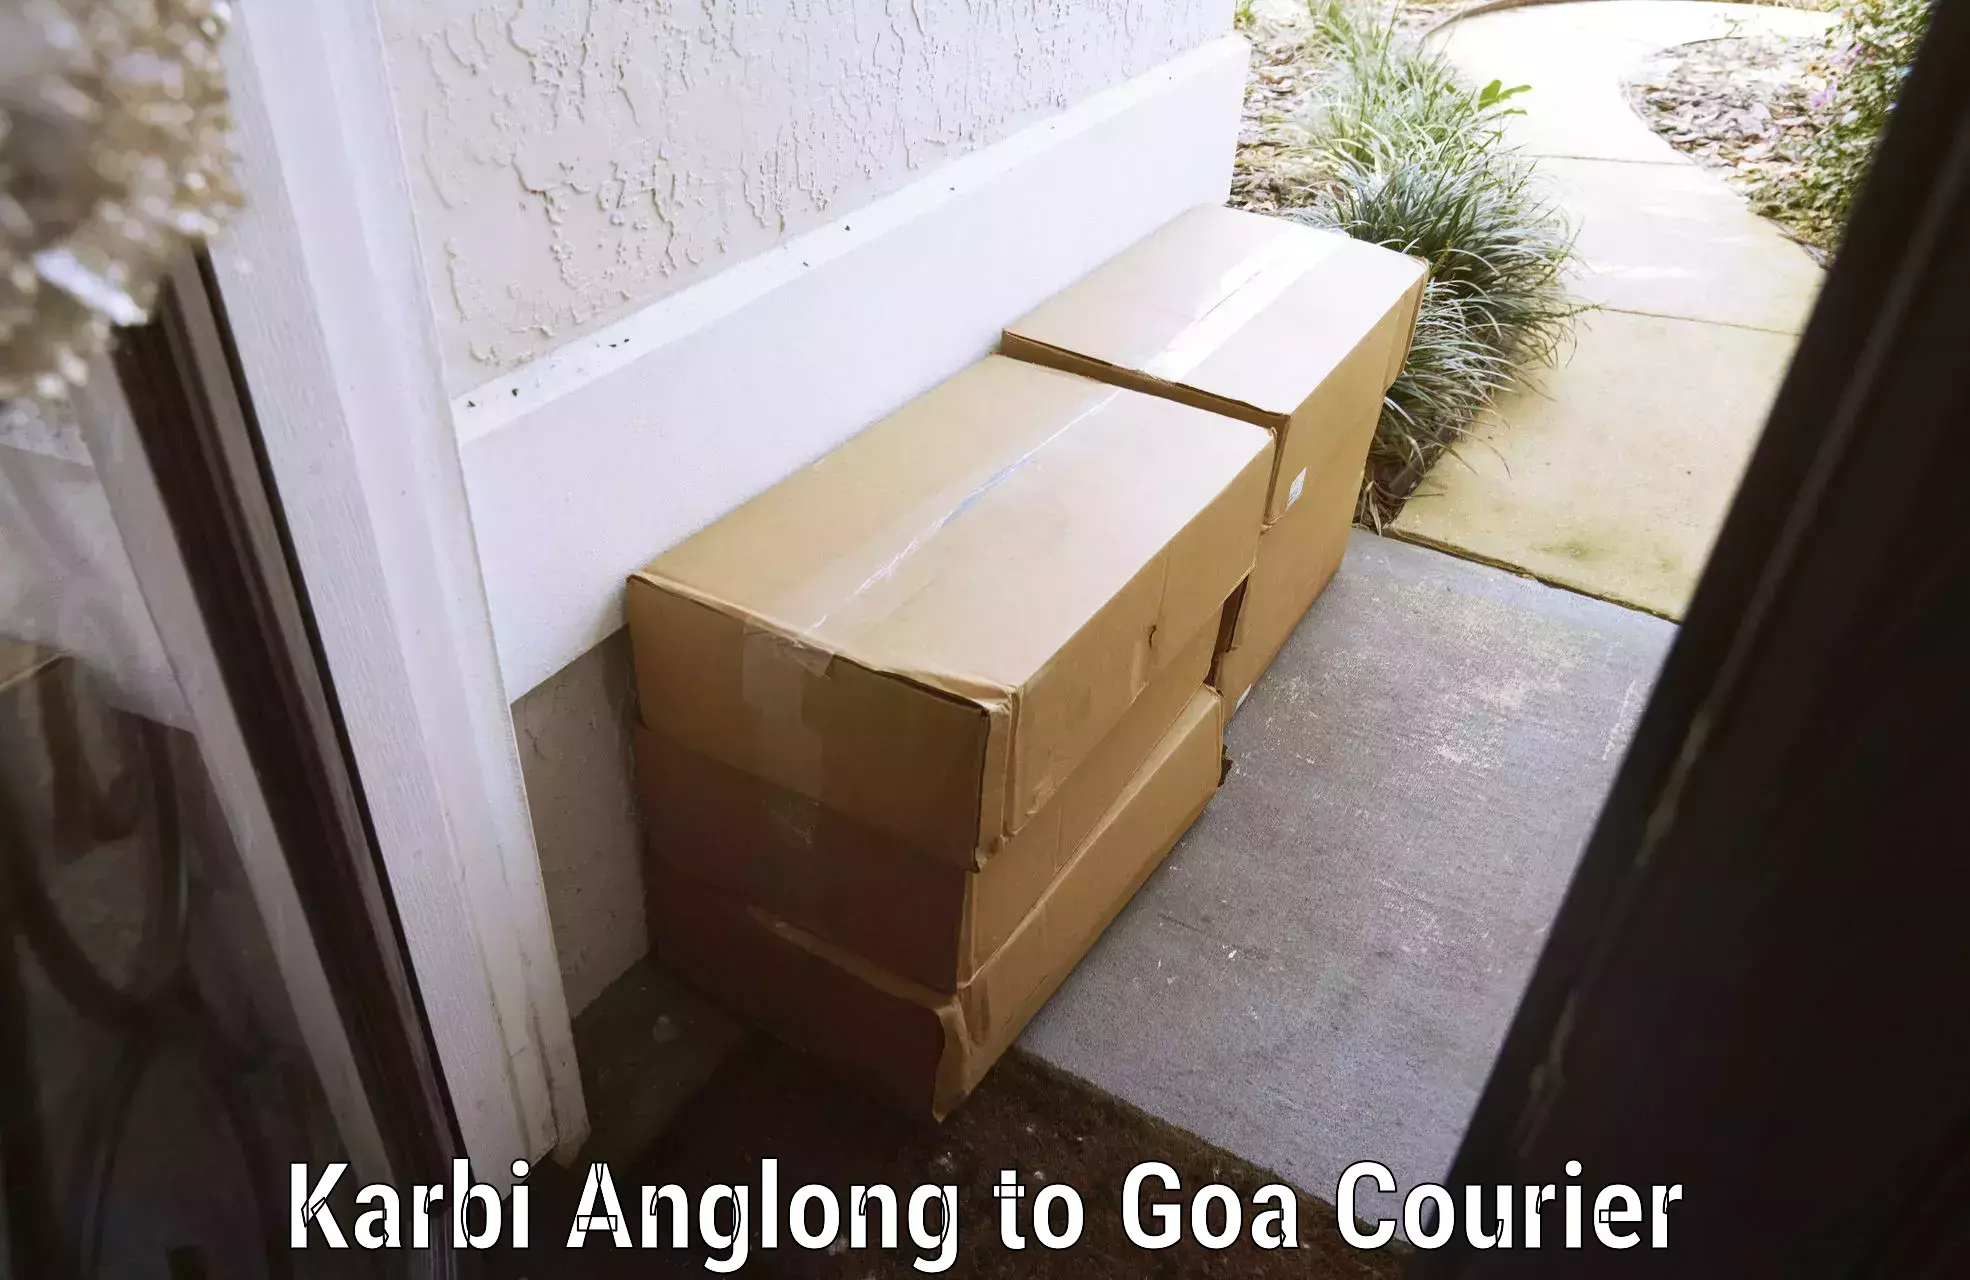 Baggage courier operations Karbi Anglong to Ponda